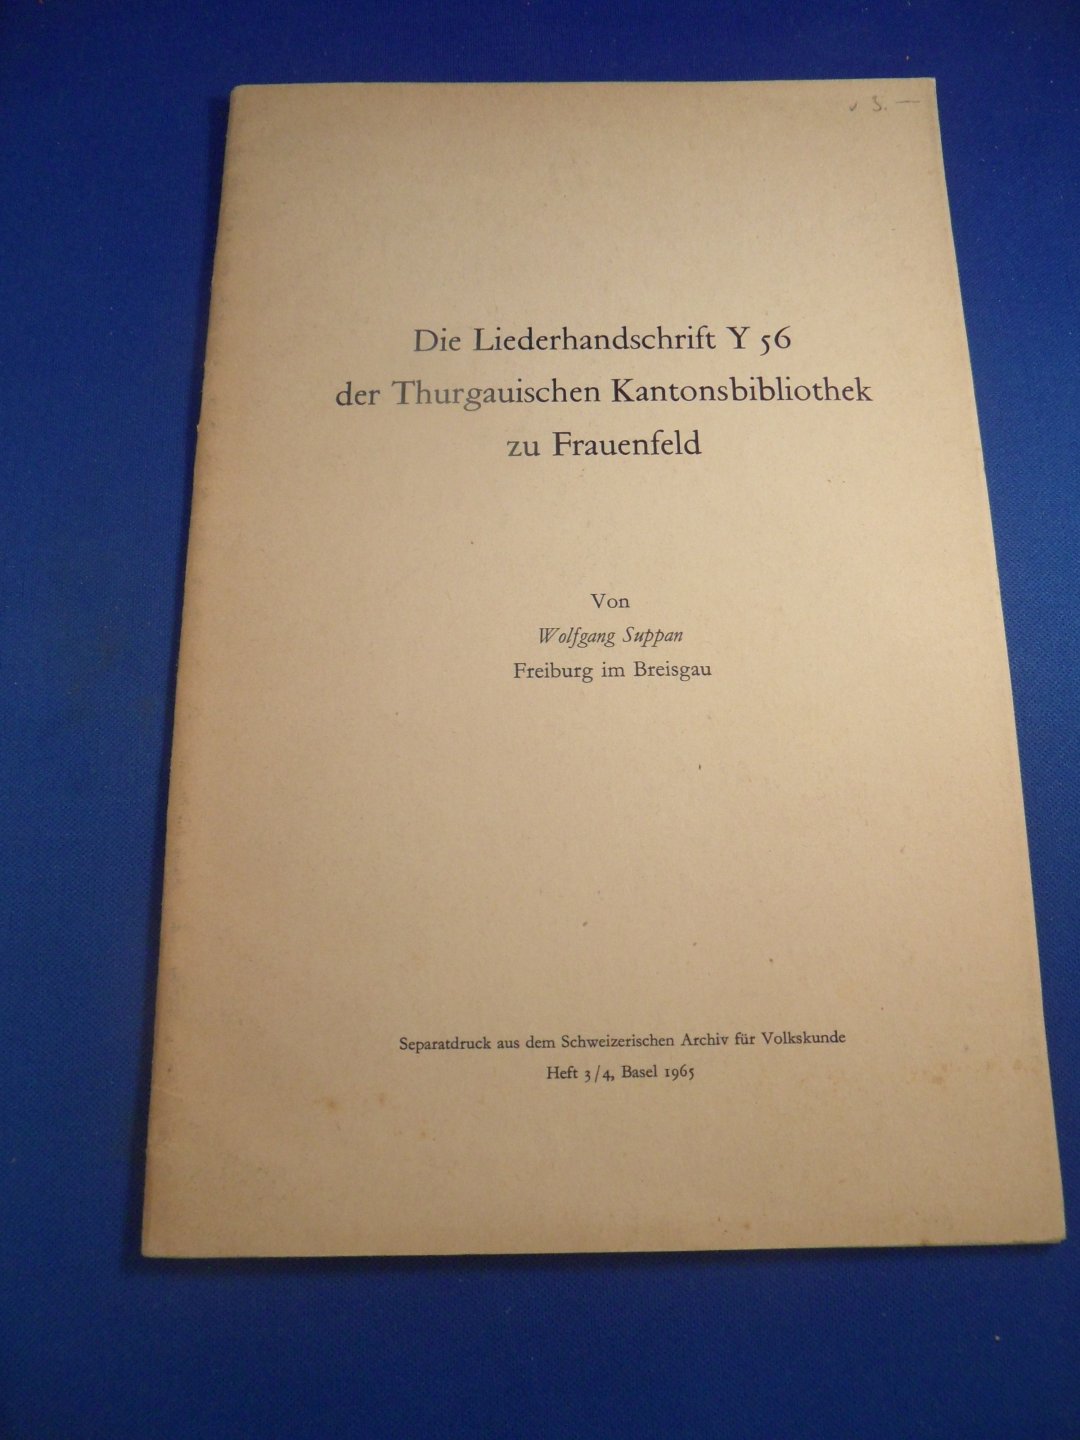 Suppan, Wolfgang - Suppan, Wolfgan Die Liederhandschrift Y 56 der Thurgauischen Kantonsbibliothek zu Frauenfeld